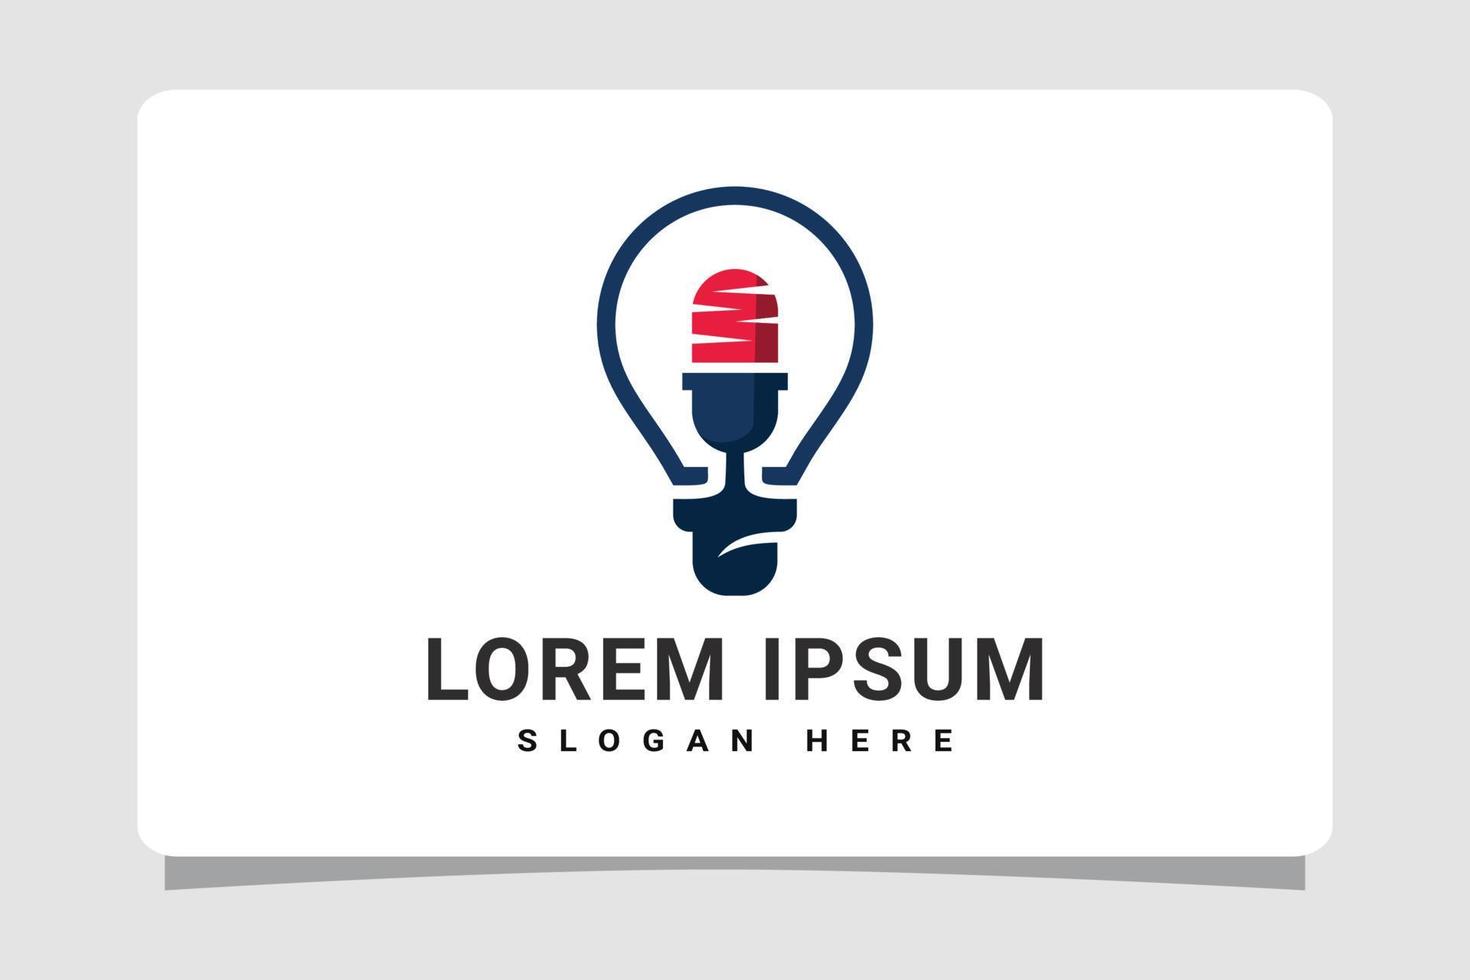 moderno inteligente podcast logo modelo diseño inspiración vector